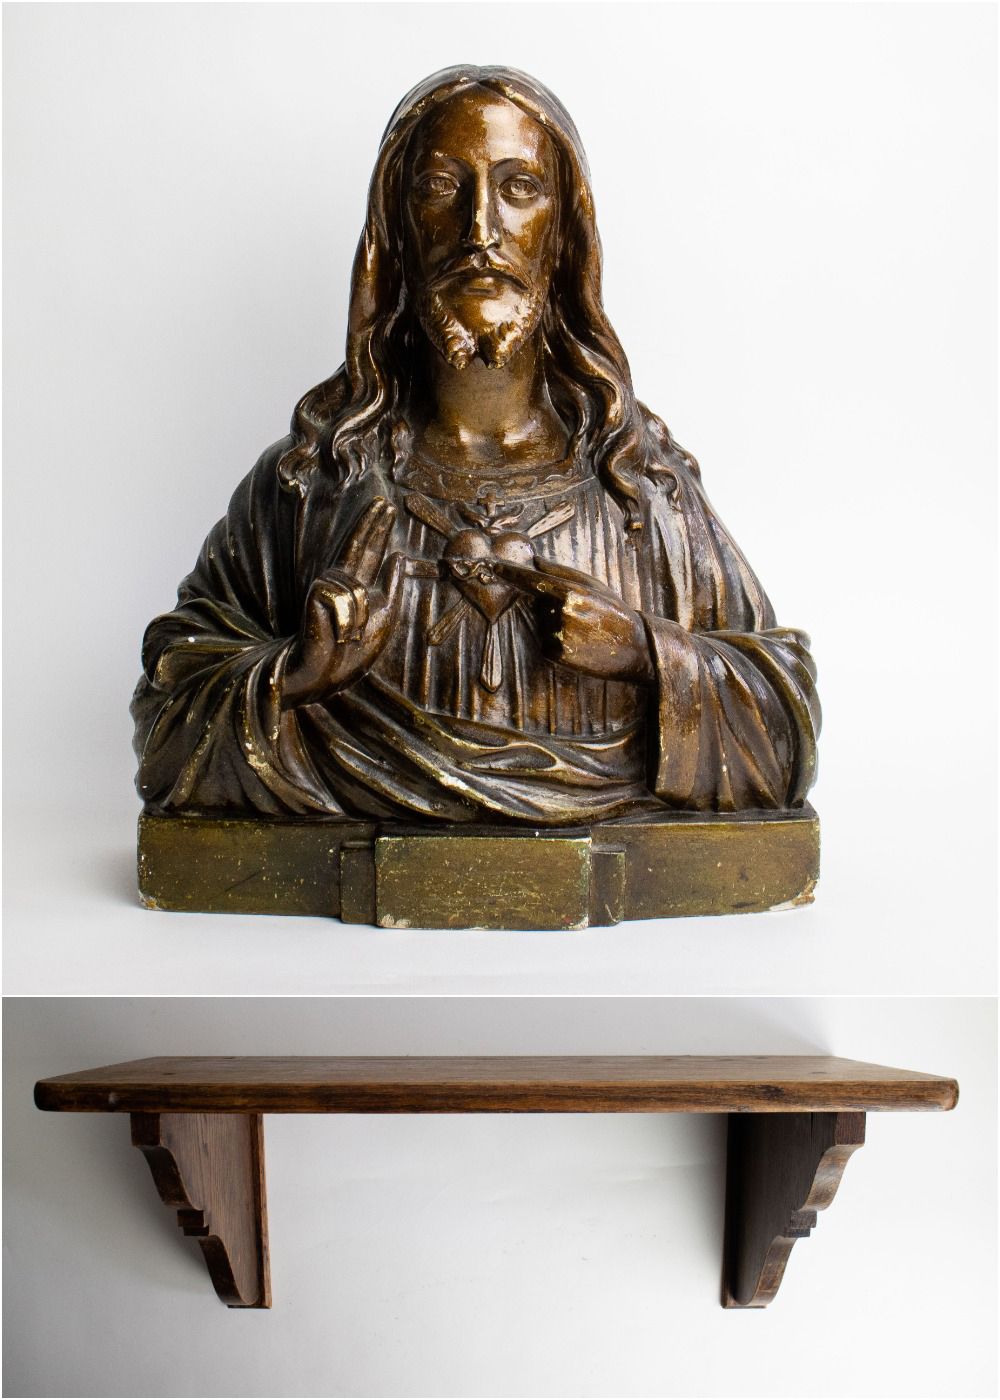 Null Cristo in gesso patinato color bronzo
Cristo in gesso patinato color bronzo&hellip;